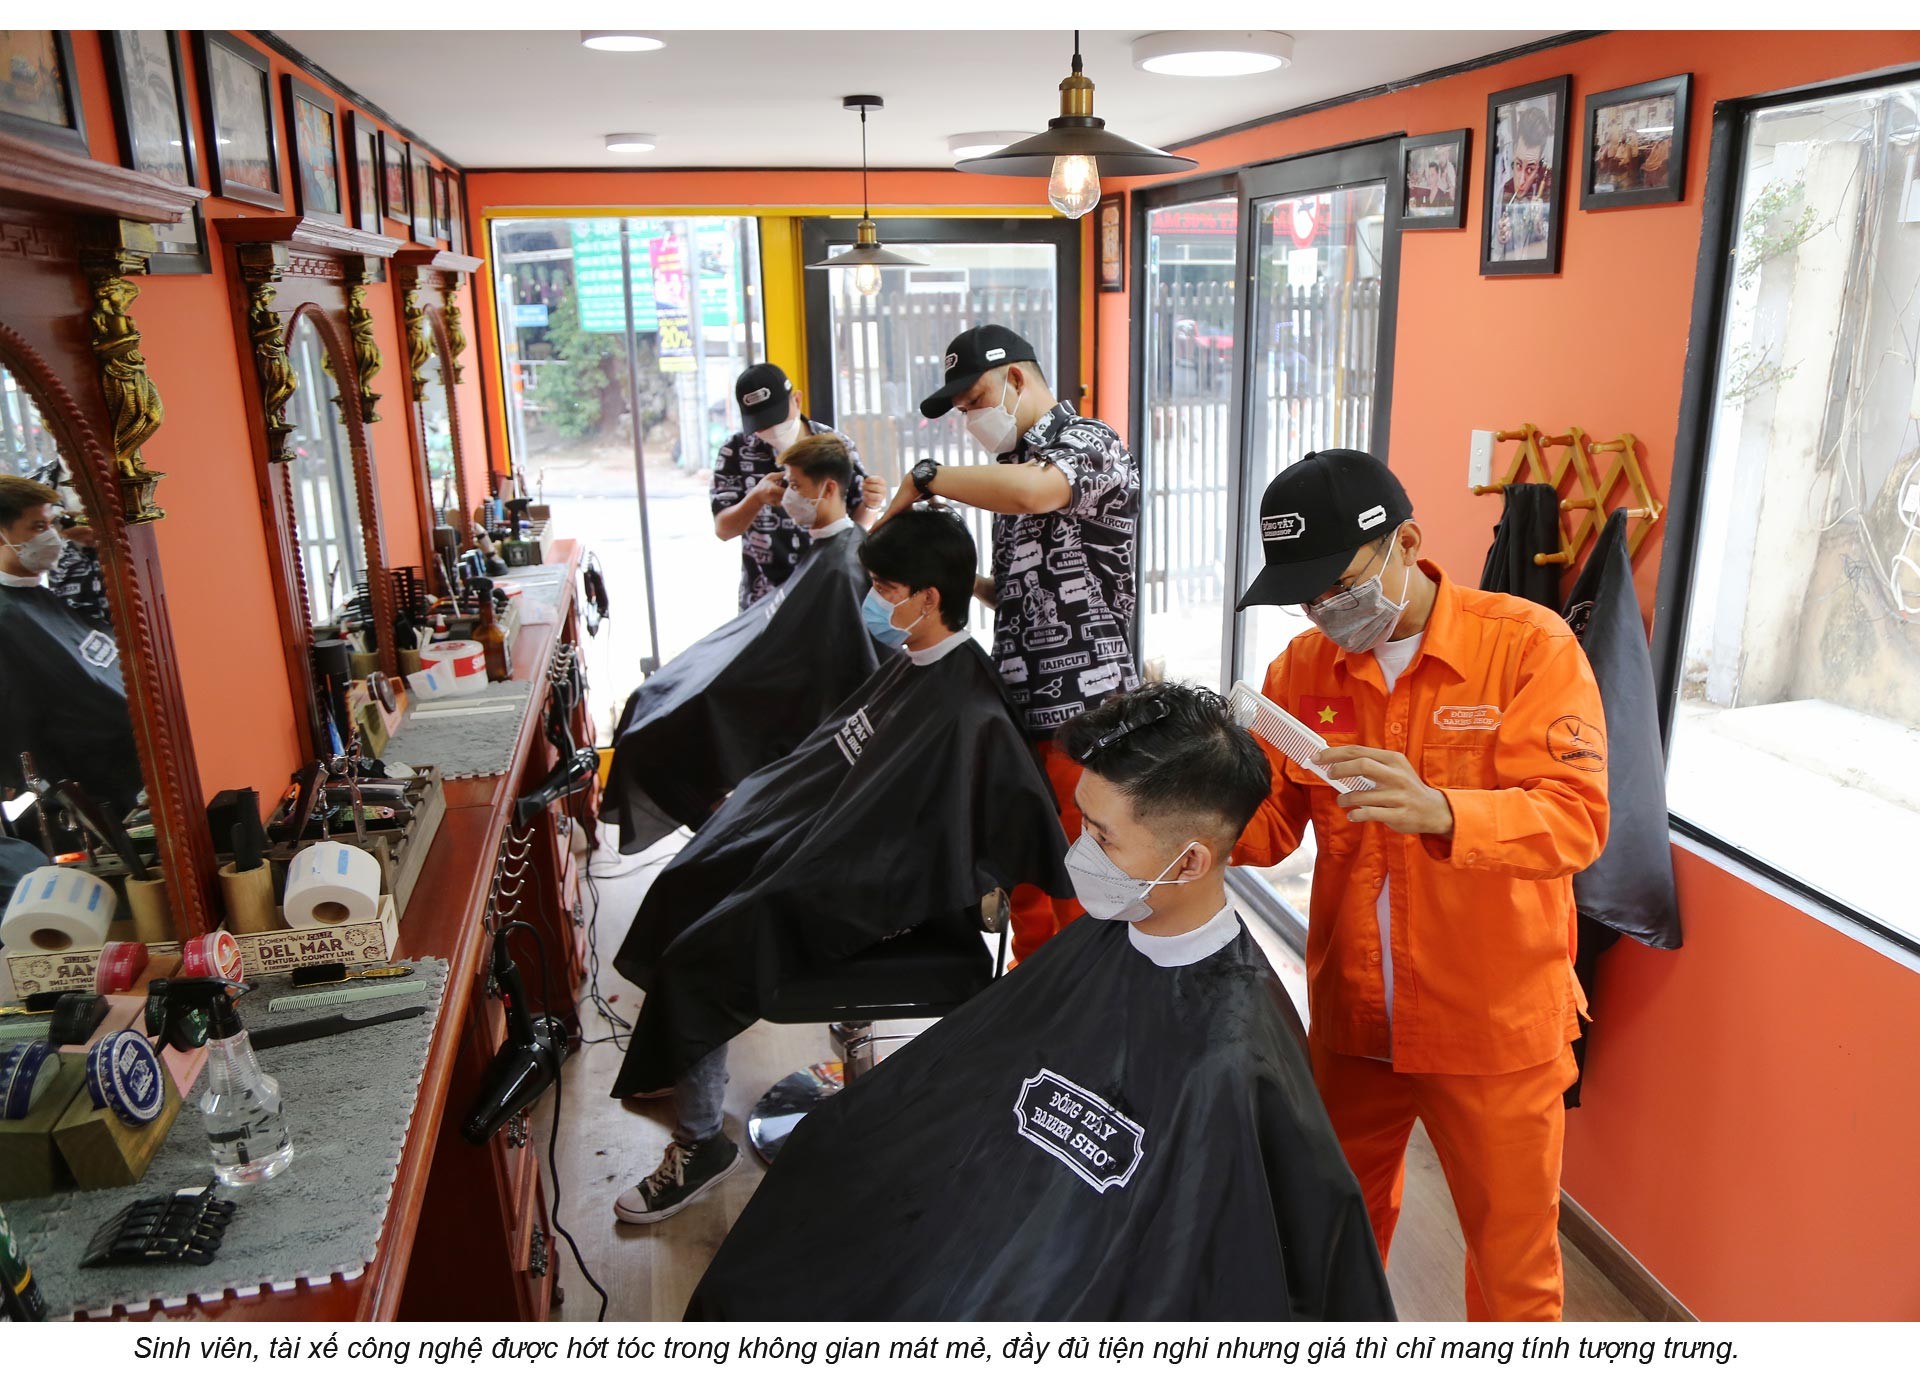 Sài Gòn có anh thợ cắt tóc tánh kỳ…